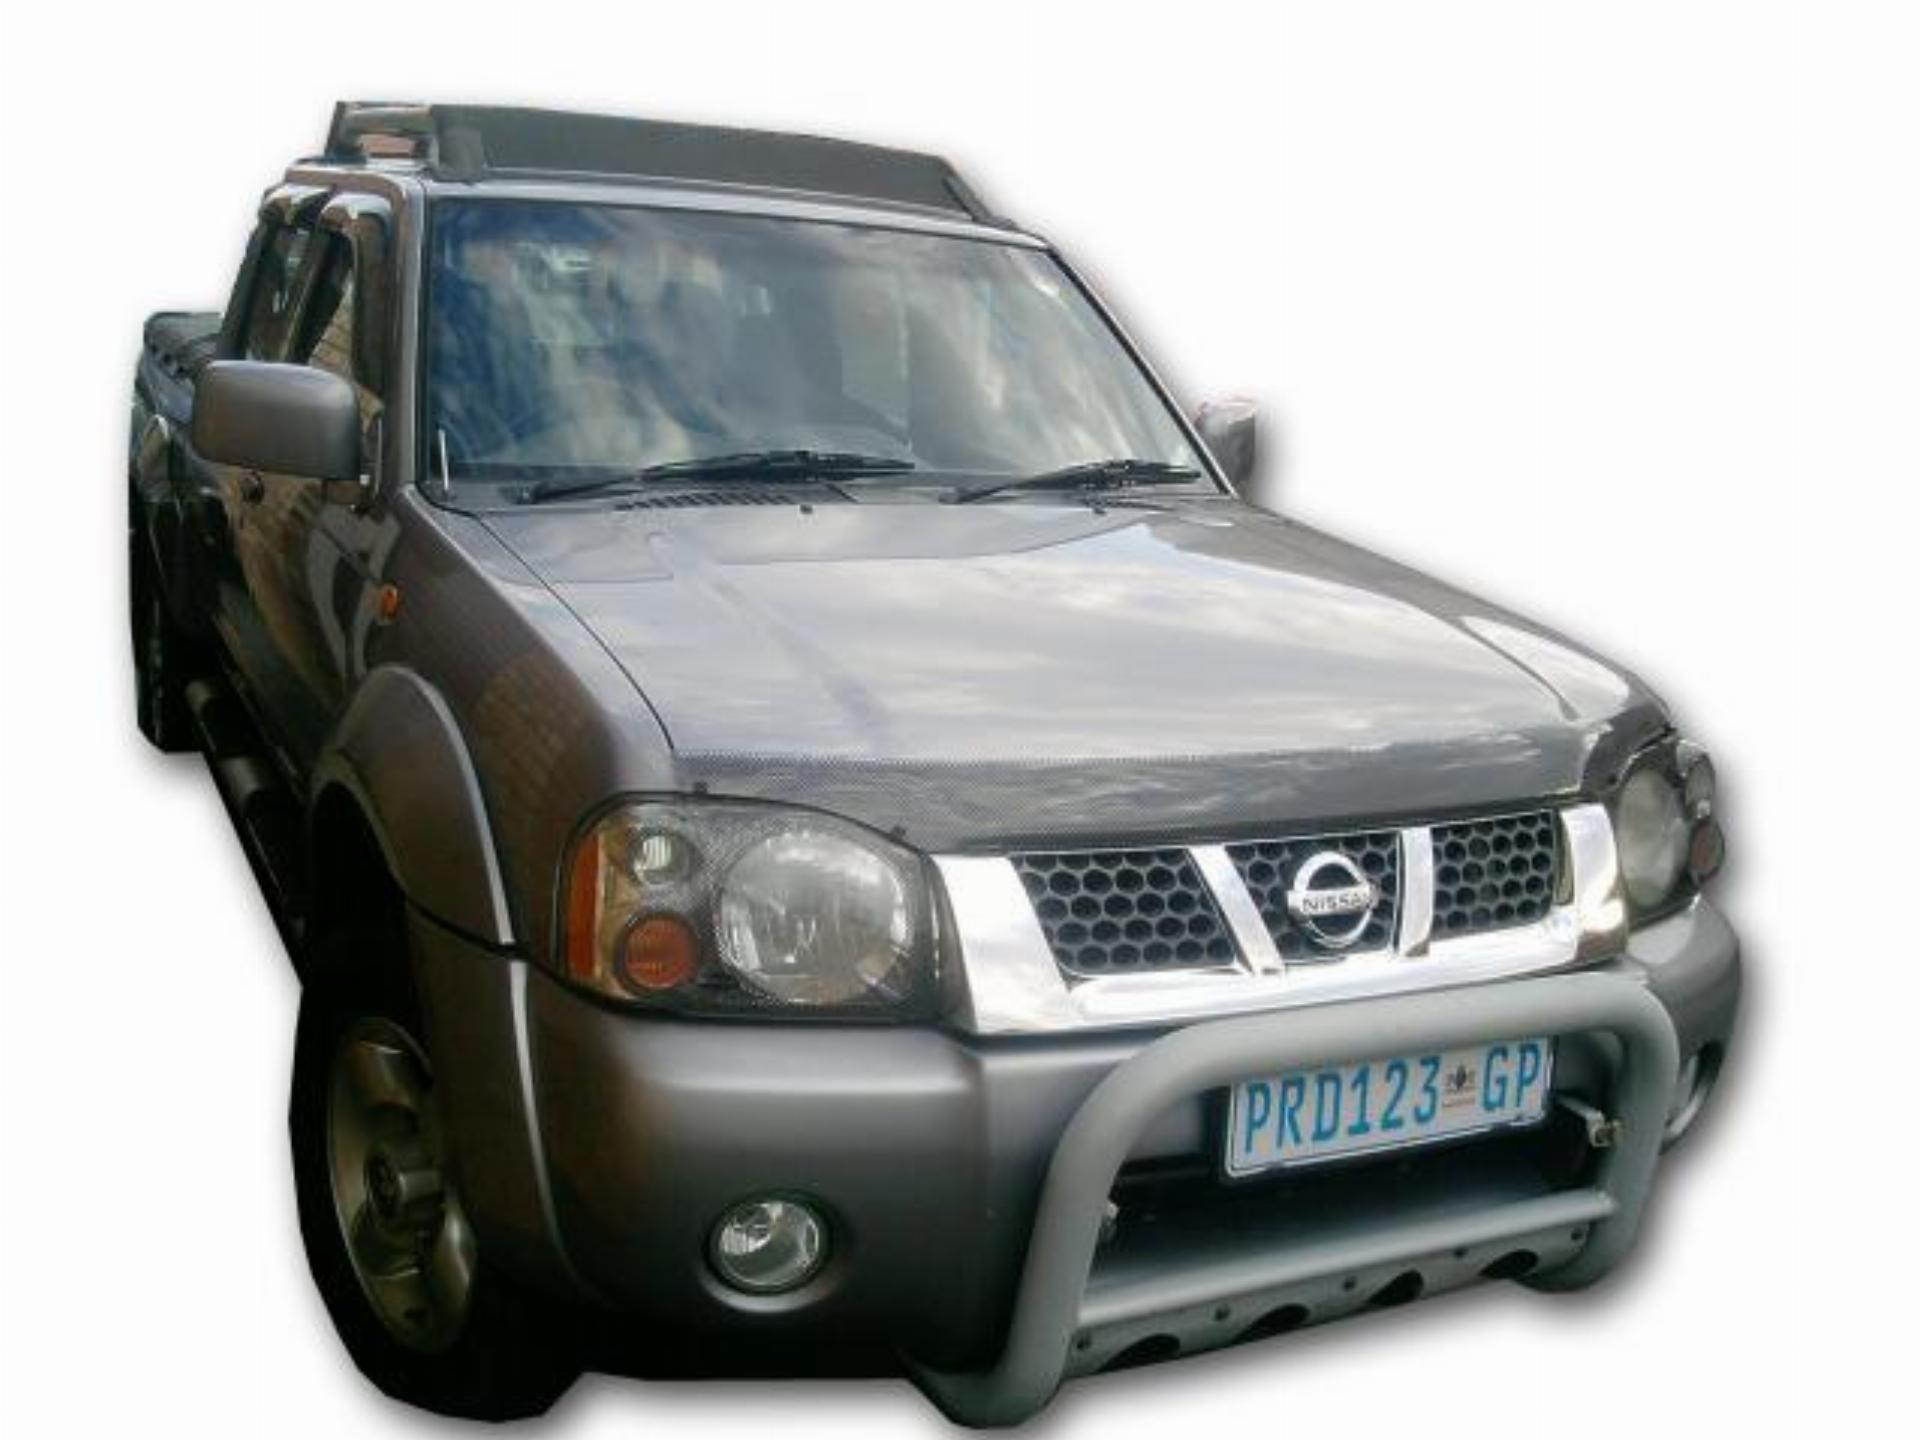 Used Nissan Hardbody 3.3 V6 2003 on auction - PV1000425